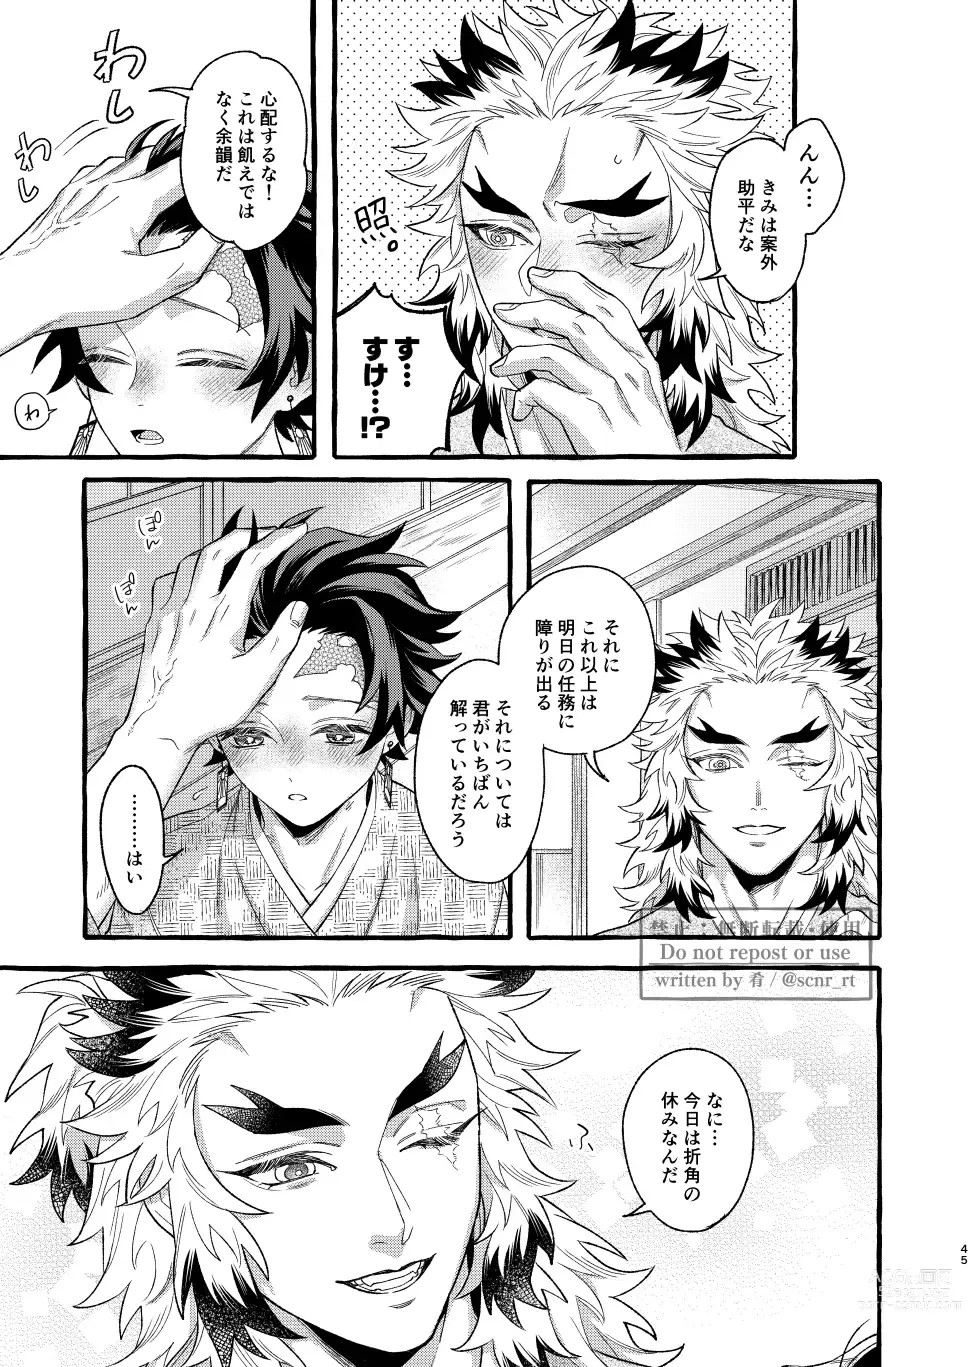 Page 44 of doujinshi Yoin